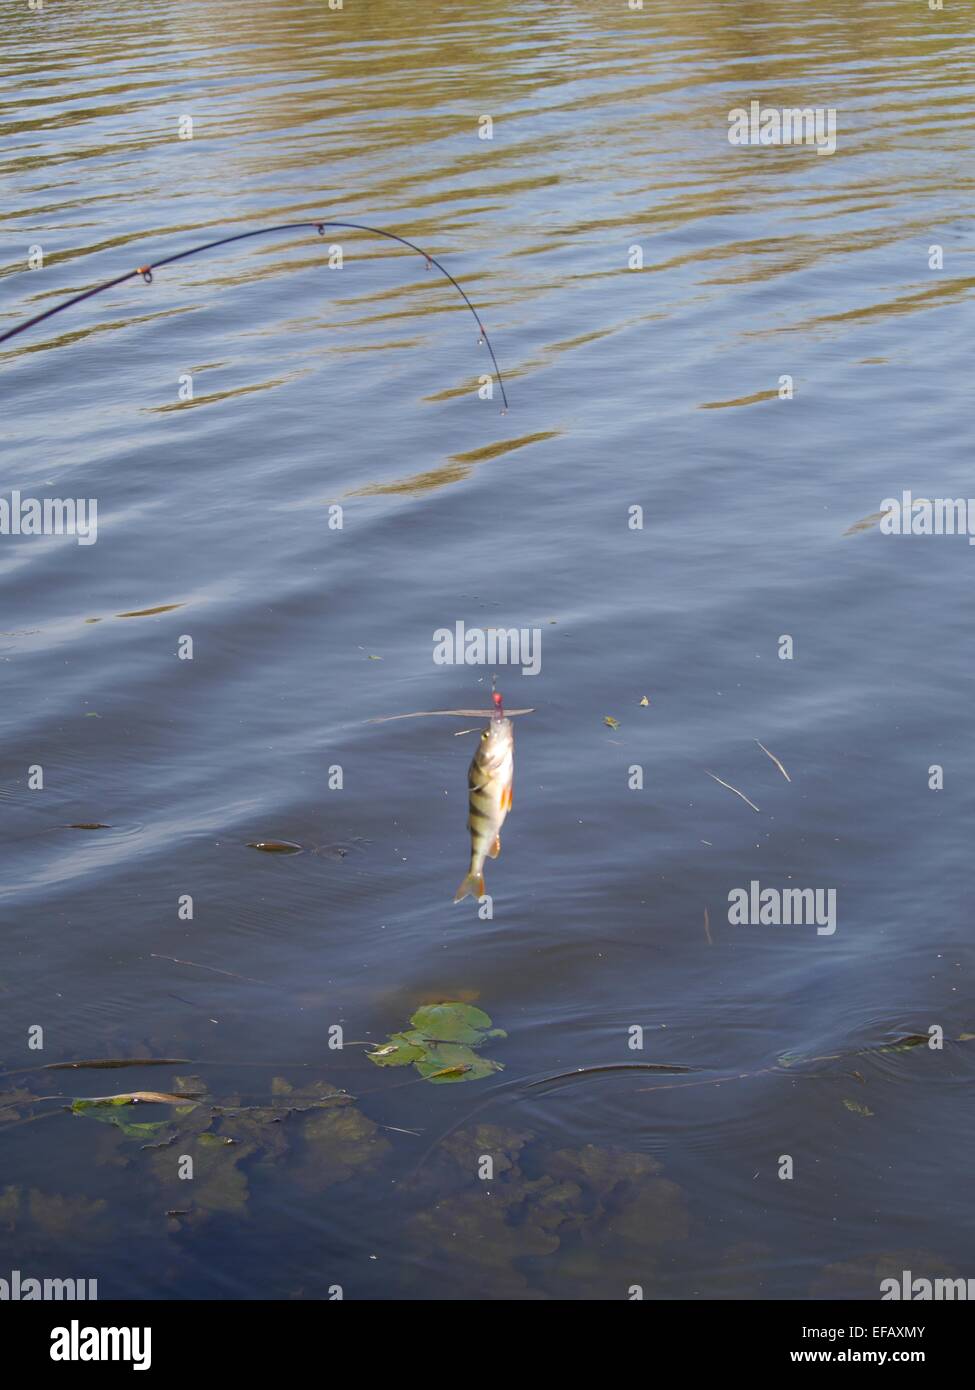 Percher sur canne à pêche sur le lac background Banque D'Images